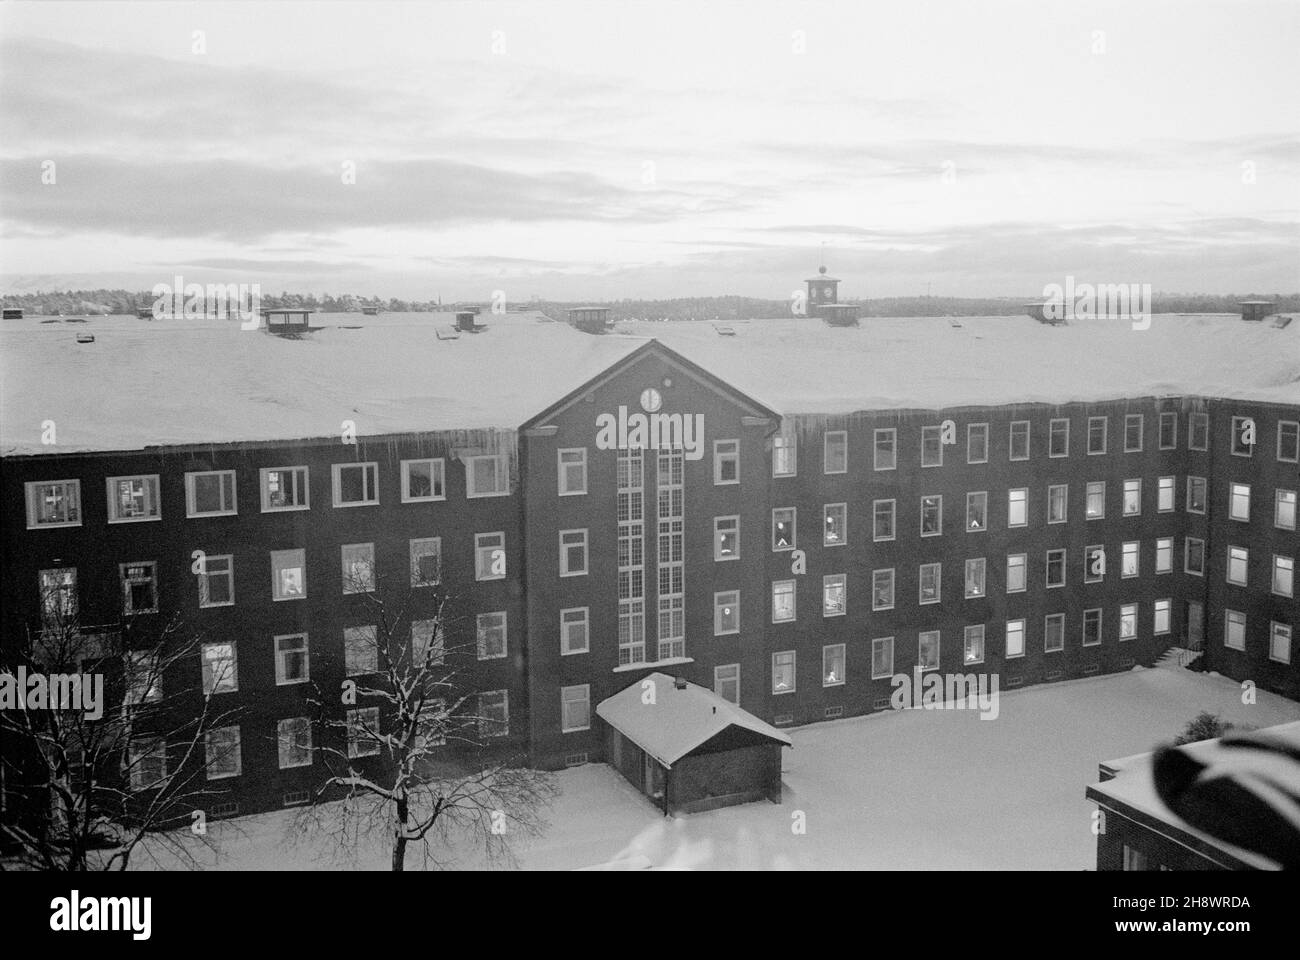 L'edificio Stora Kinns presso l'ospedale mentale Beckomberga di Bromma, Stoccolma, Svezia. La foto è scattata durante gli anni '80. Foto Stock